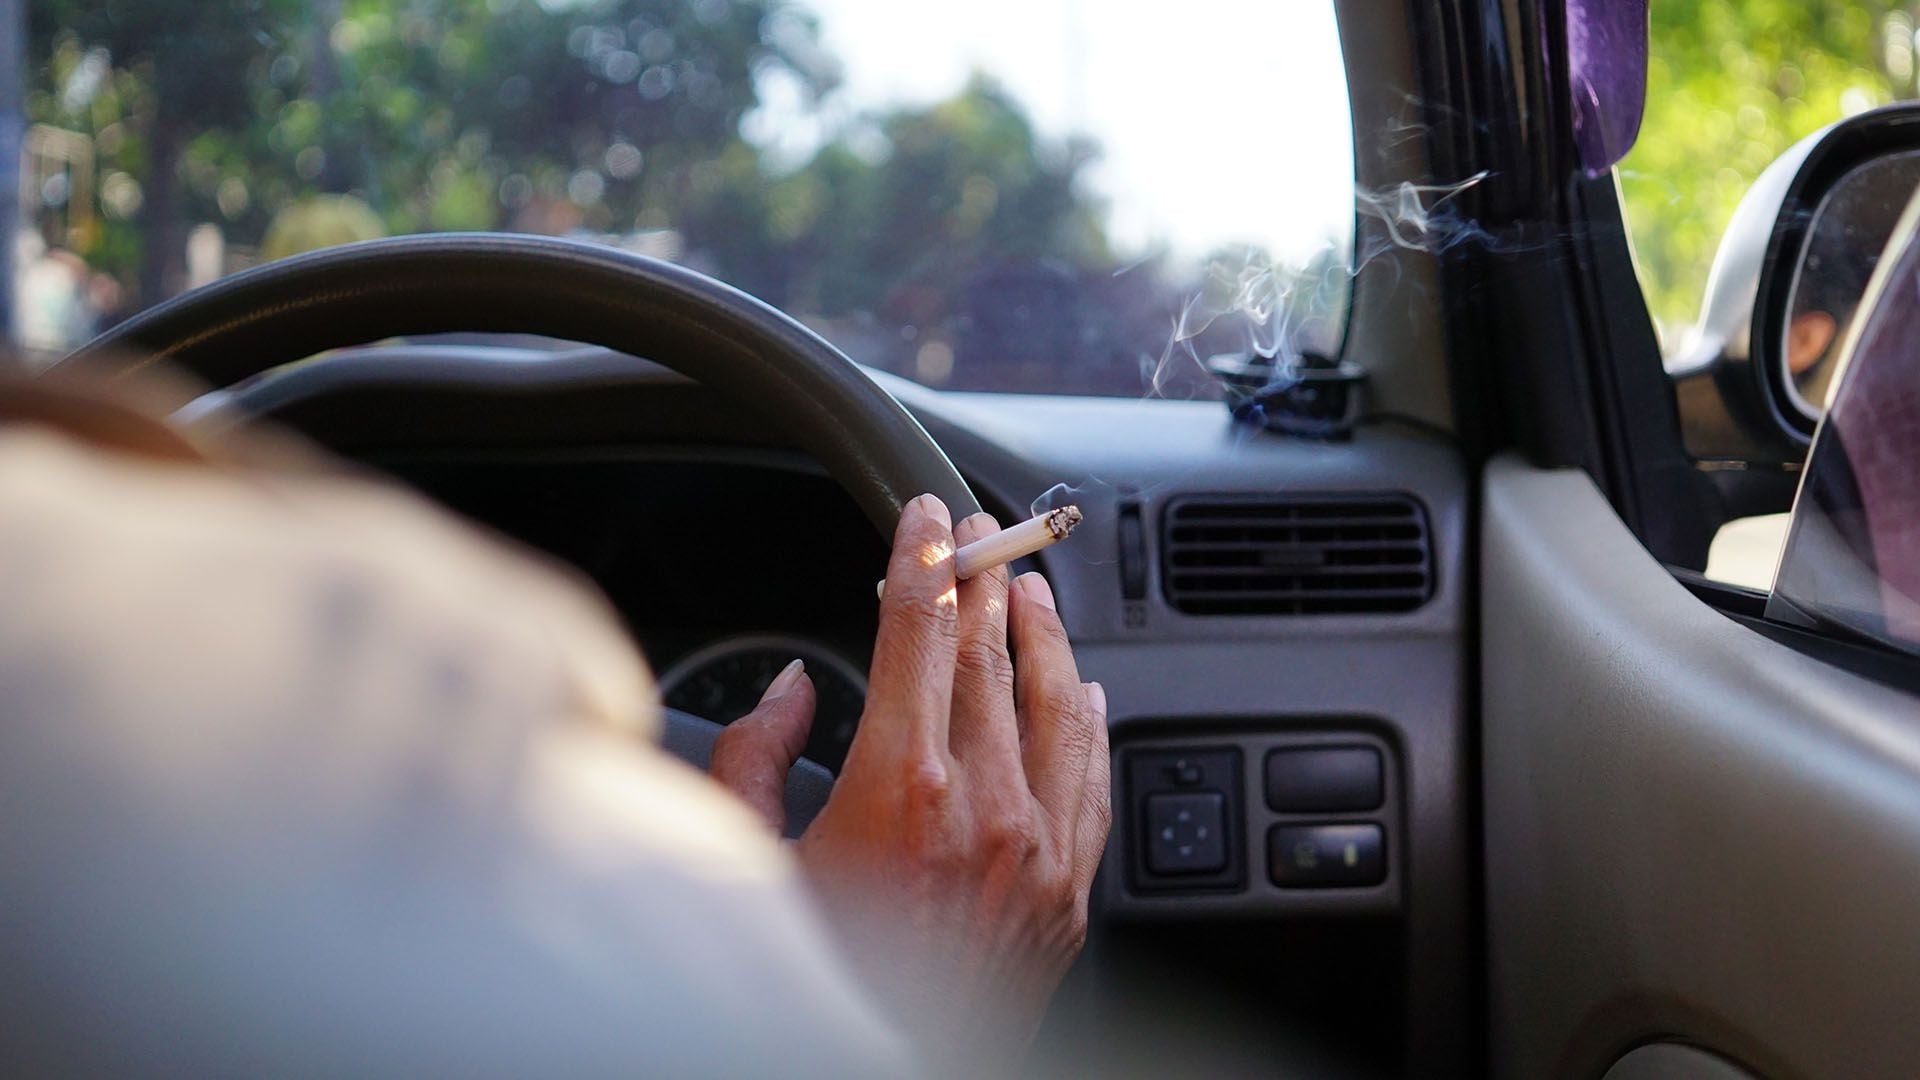 Los científicos midieron las concentraciones de nitrosaminas específicas del tabaco dentro de autos (Getty)